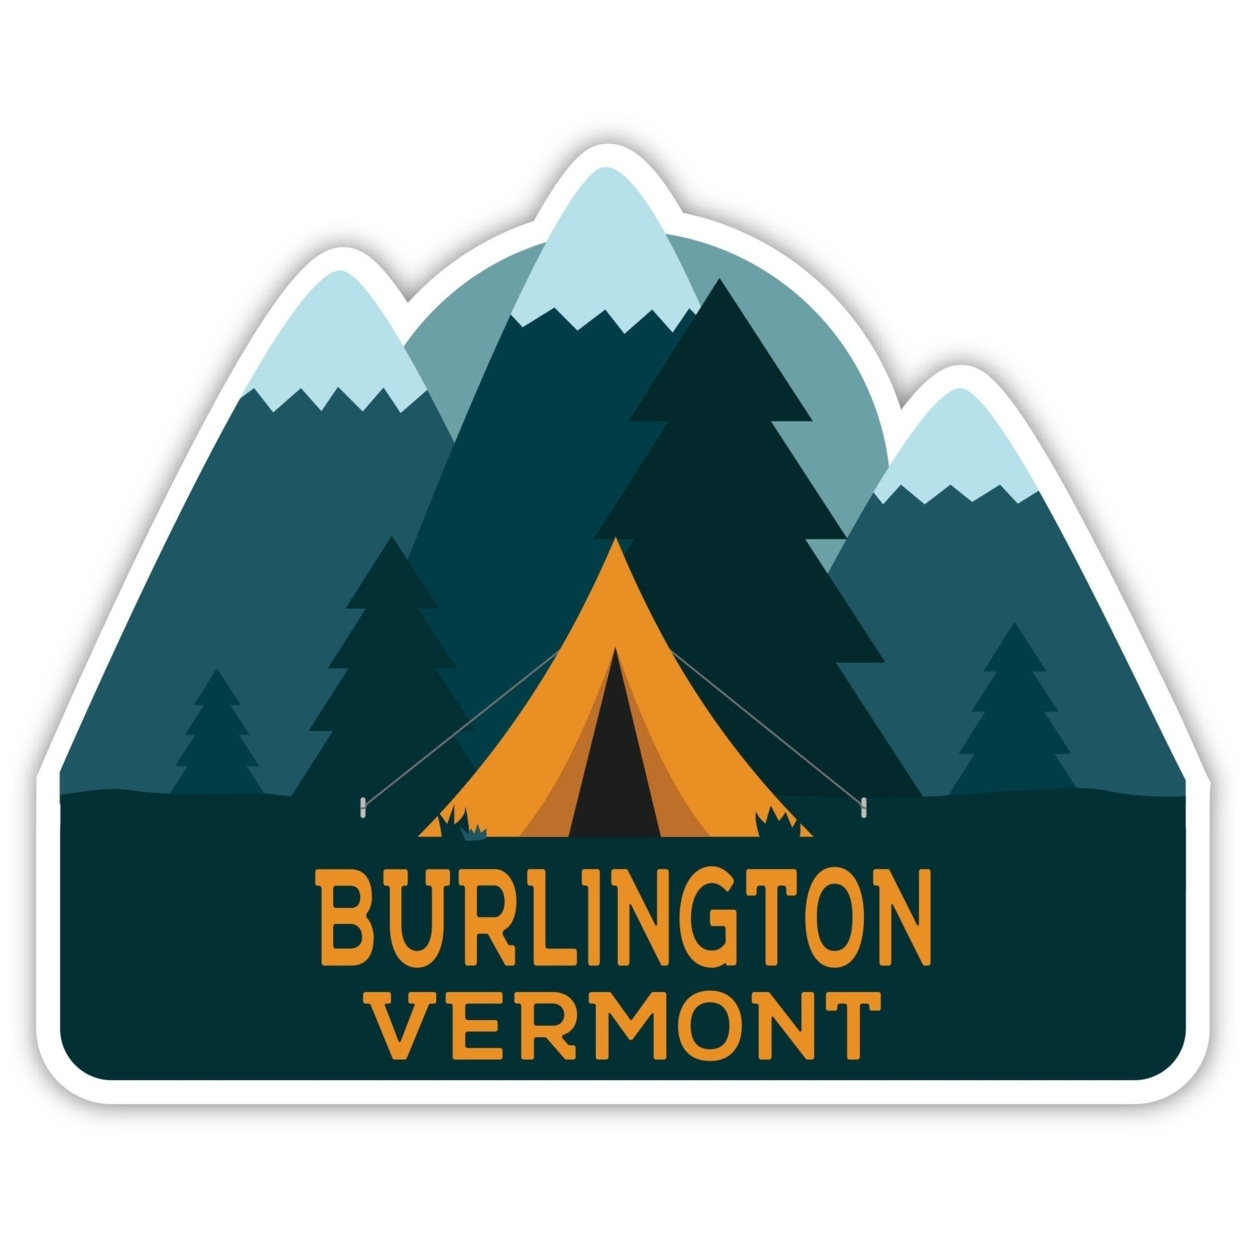 Burlington Vermont Souvenir Decorative Stickers (Choose Theme And Size) - 4-Pack, 12-Inch, Bear